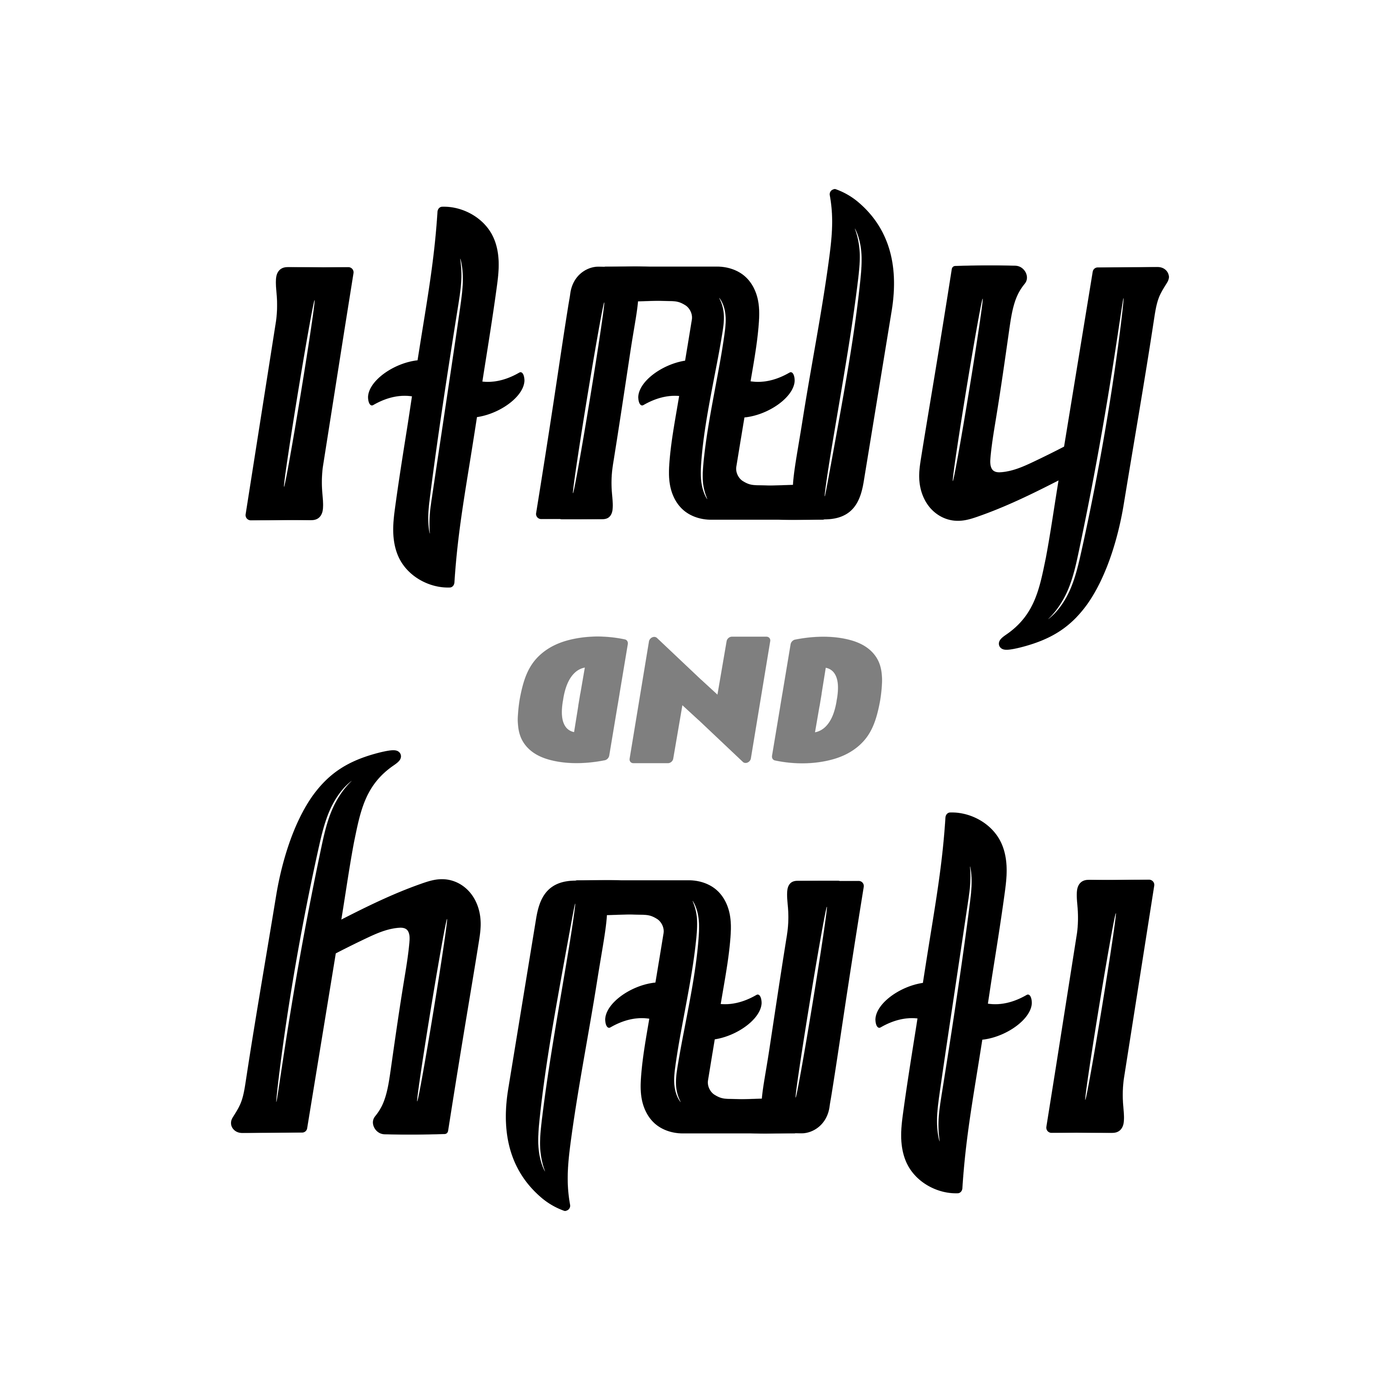 ambigram Italy and Haiti